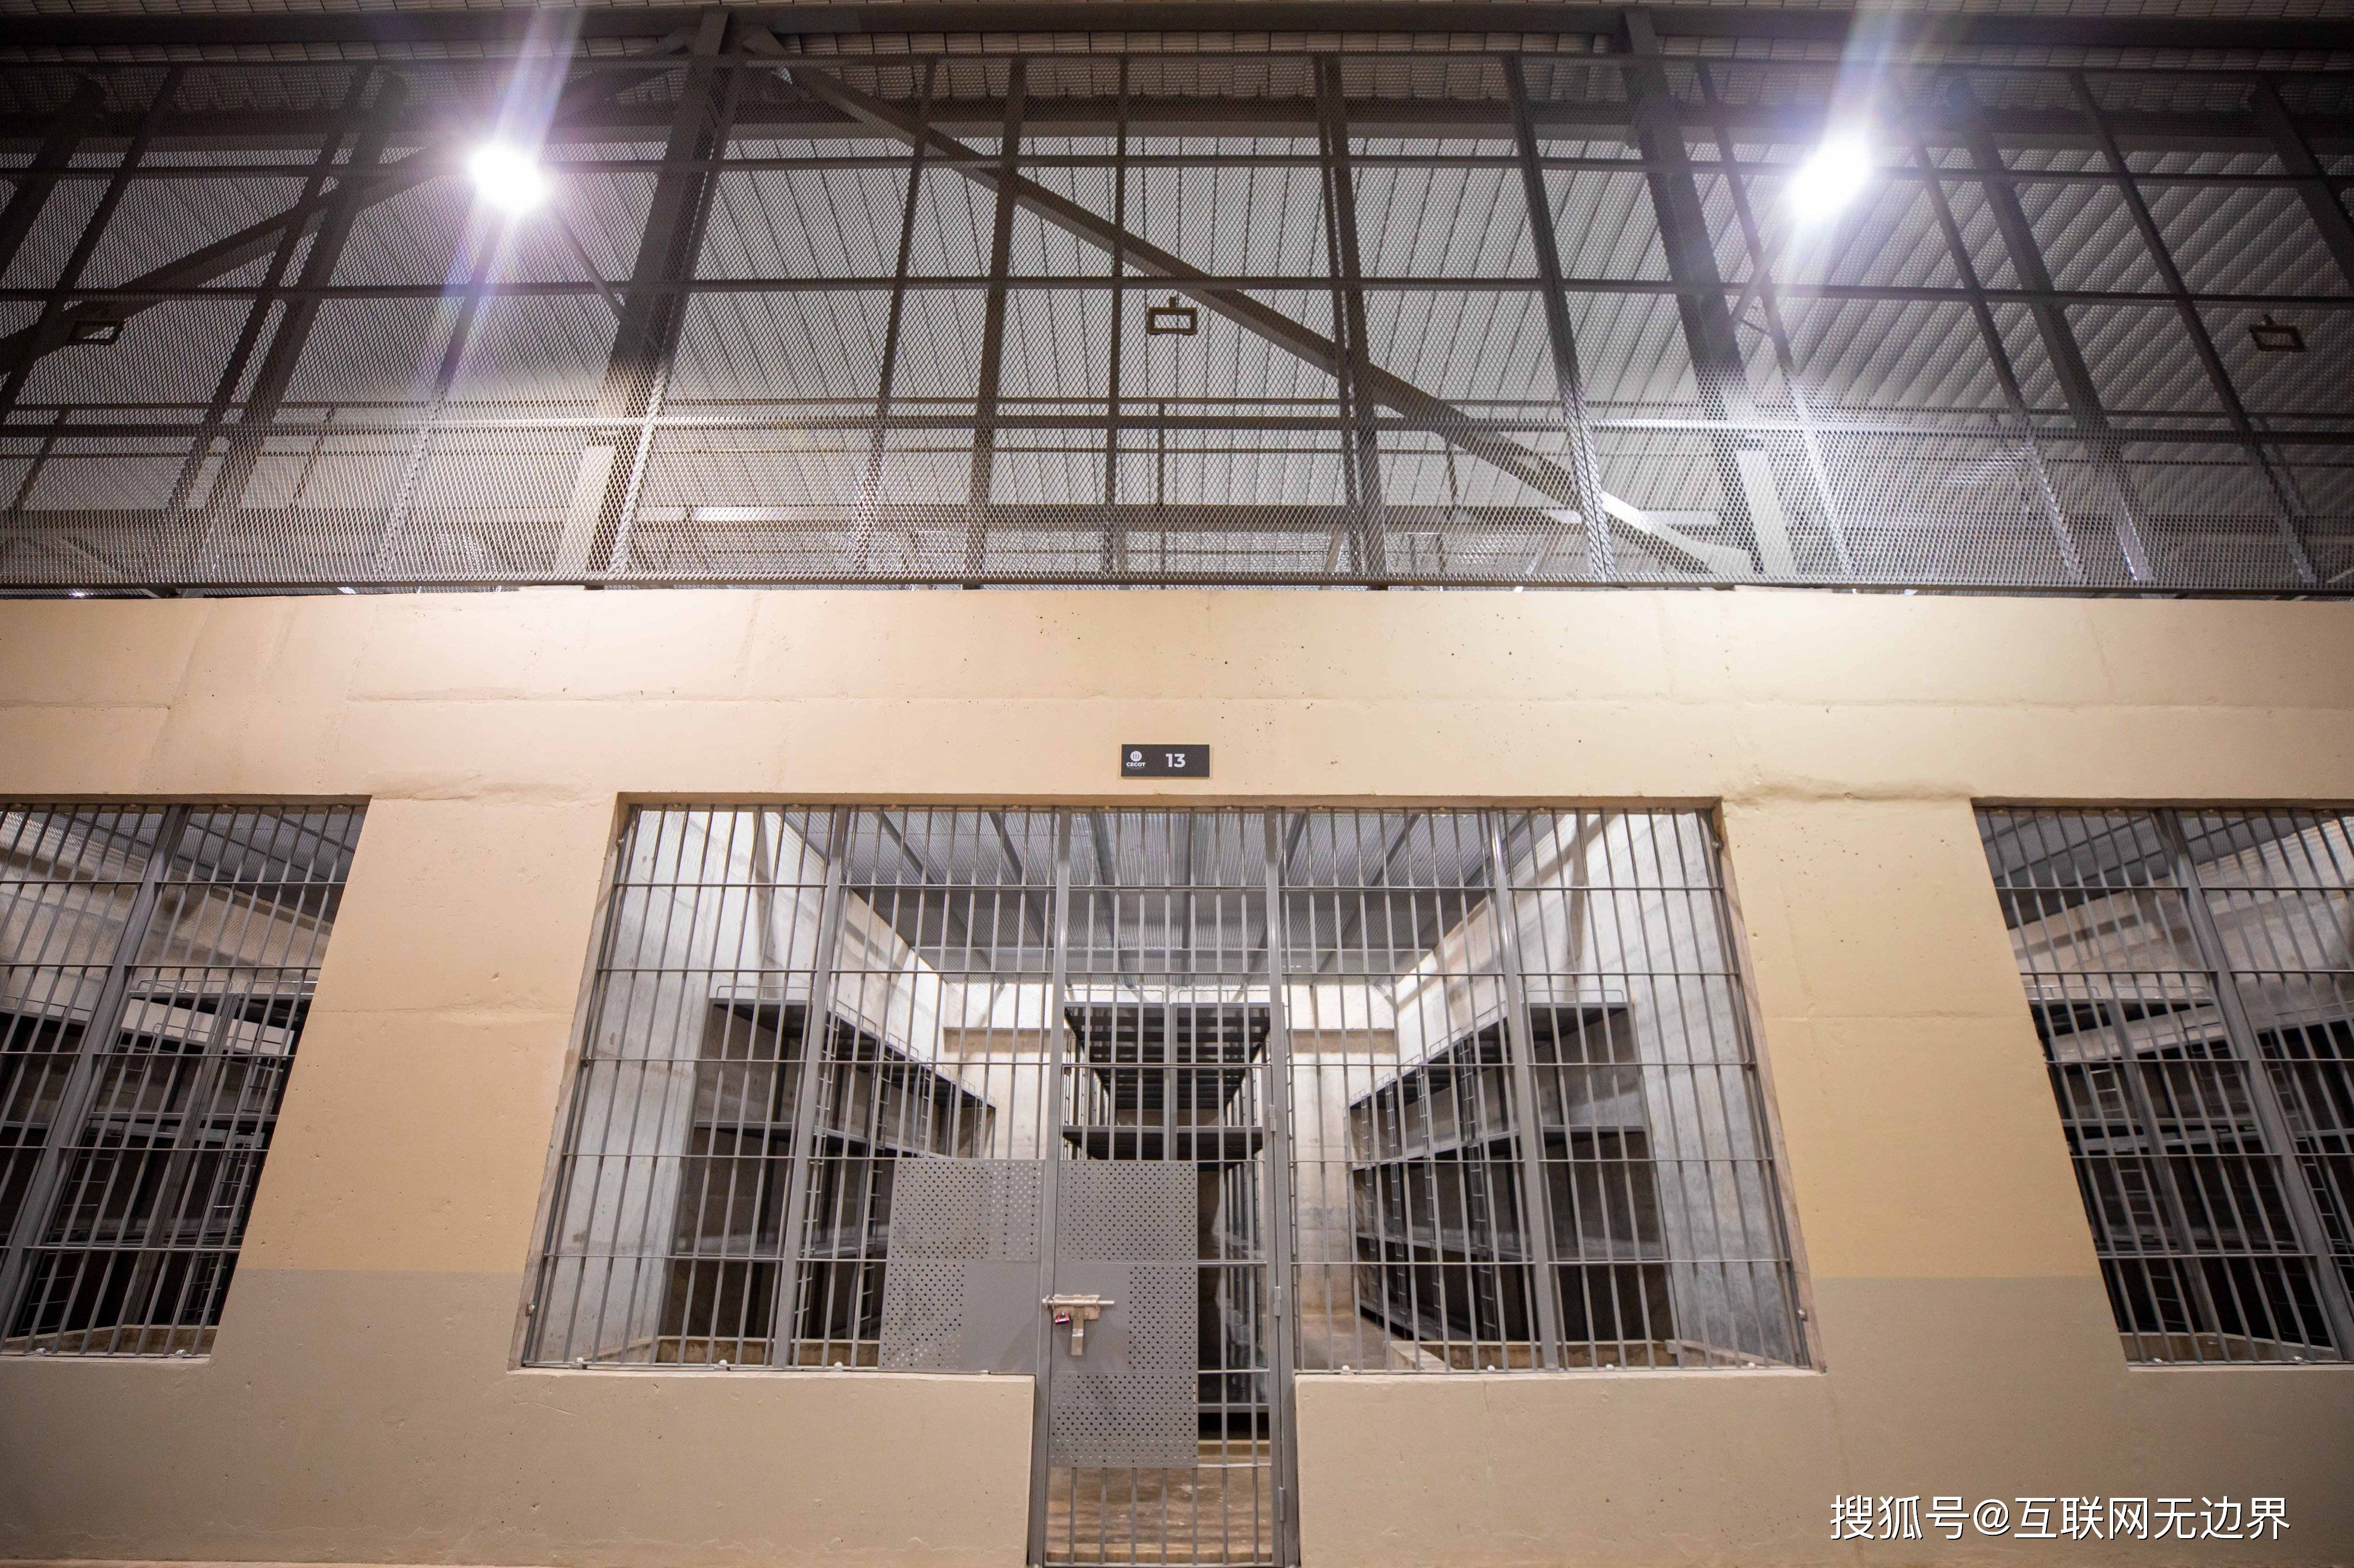 世界最大监狱诞生 可同时关押4万囚犯 吉尼斯纪录将被改写